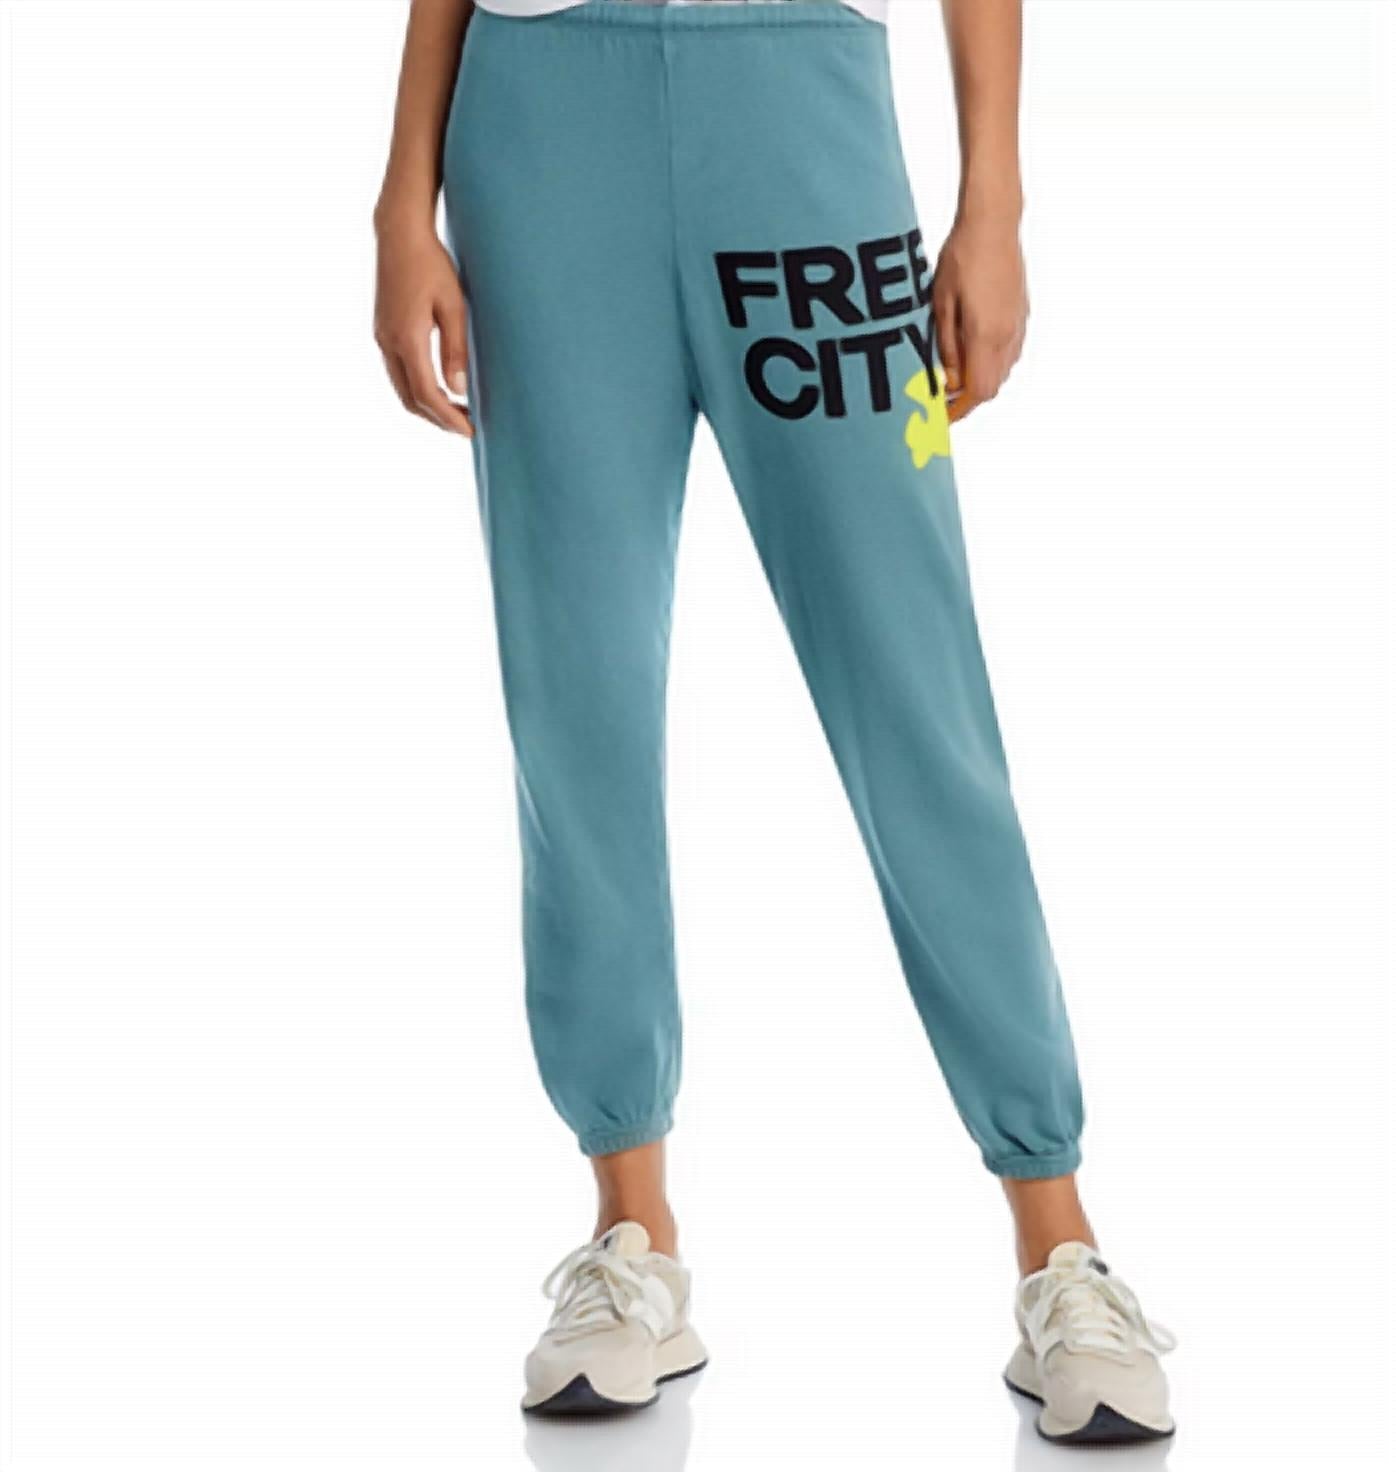 Freecity 3/4 Sweatpant In Surplus Blue In Multi